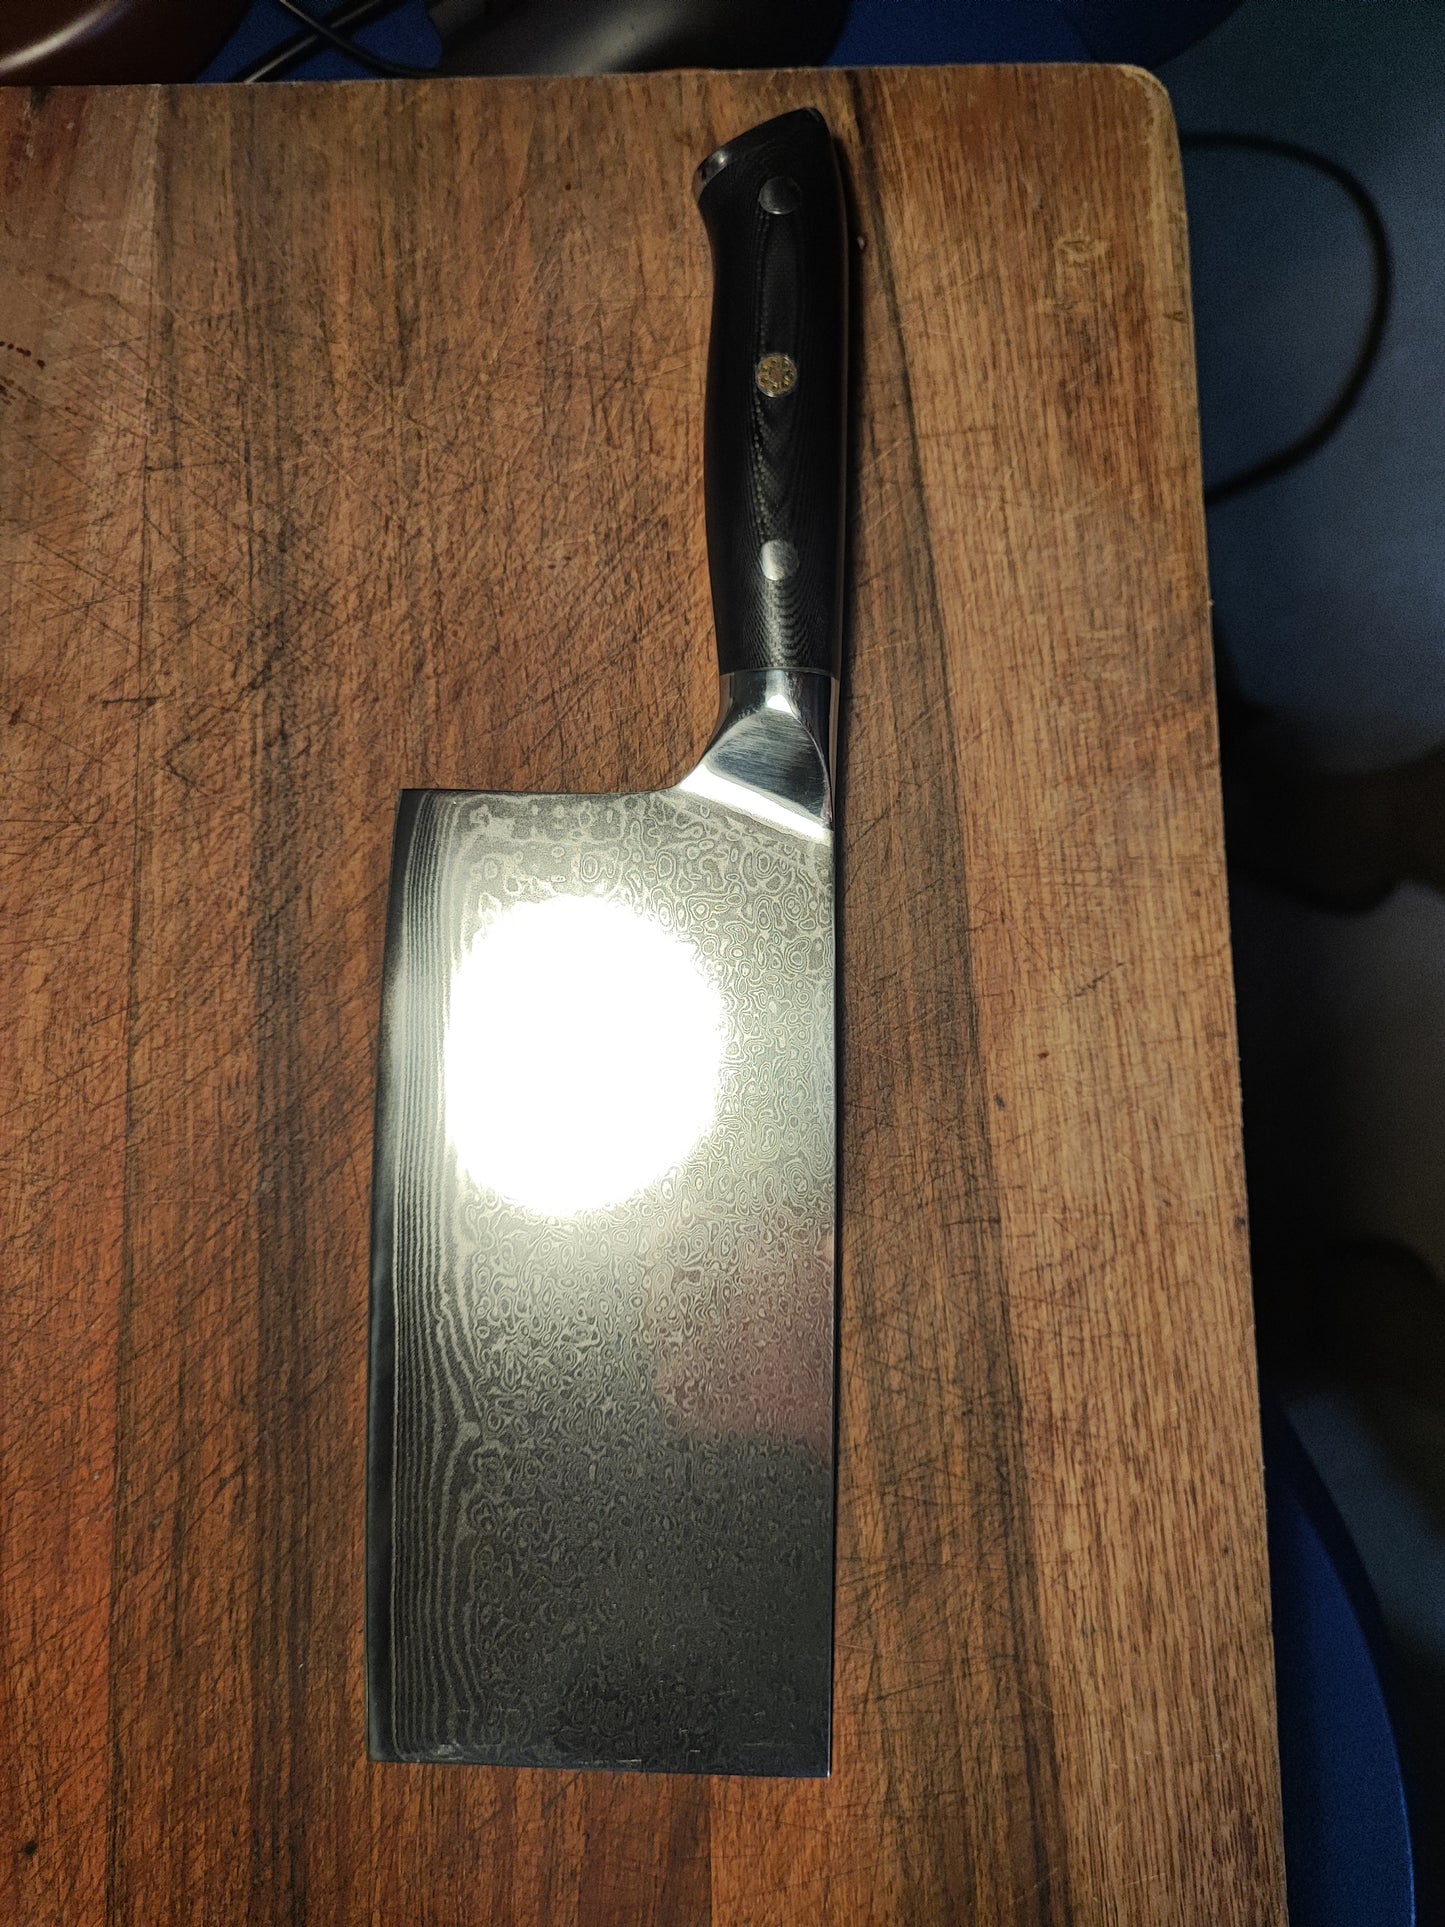 50号切片刀
VG10 (中式刀)